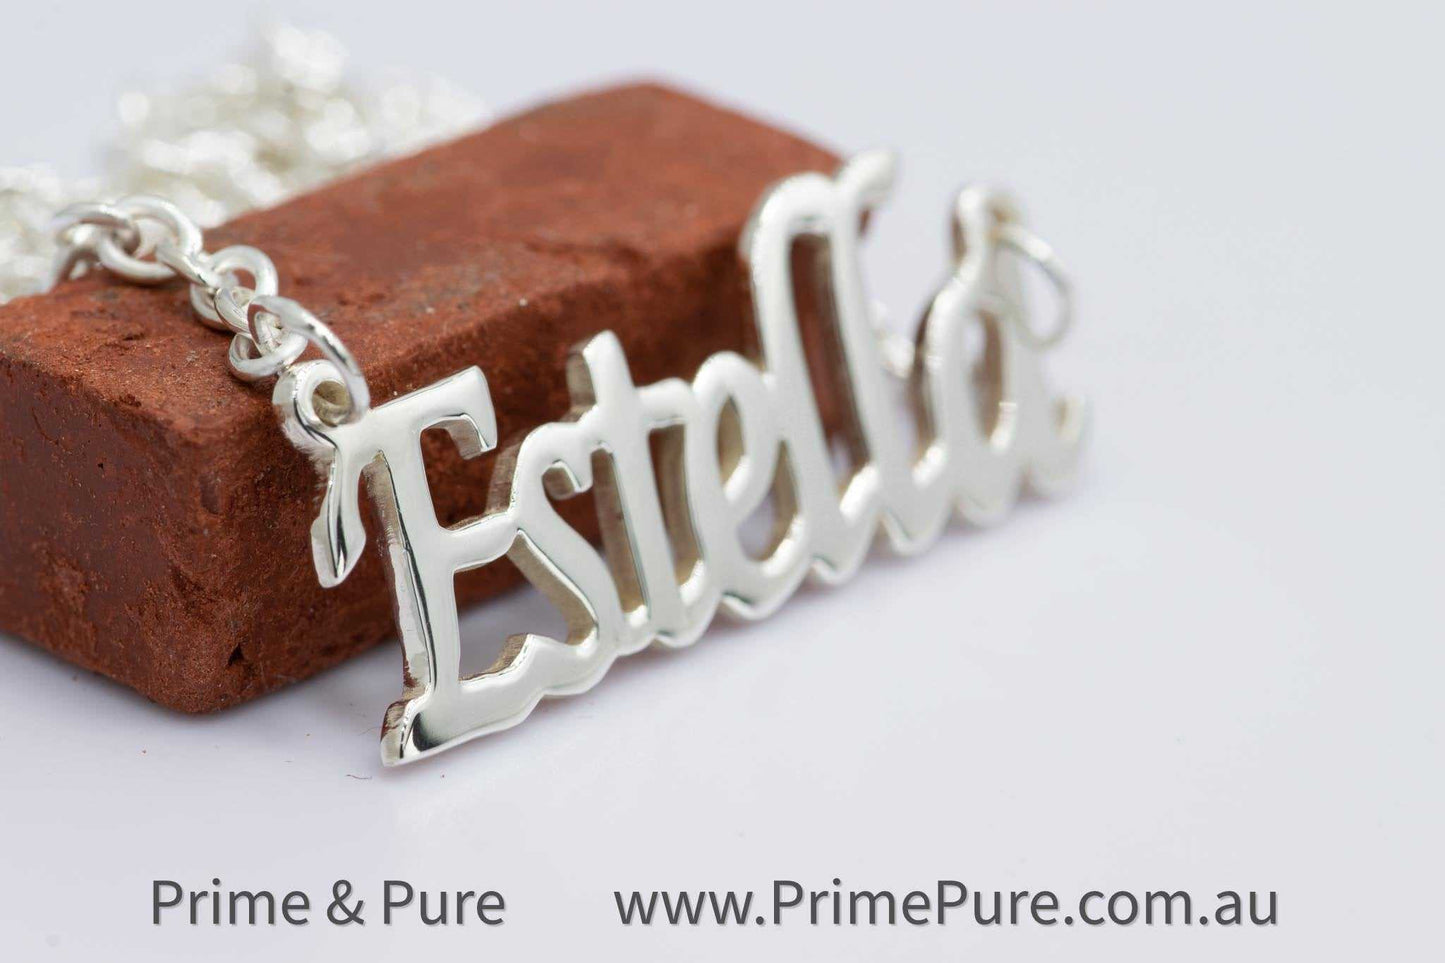 Genuine Silver Name Necklace - Prime & Pure